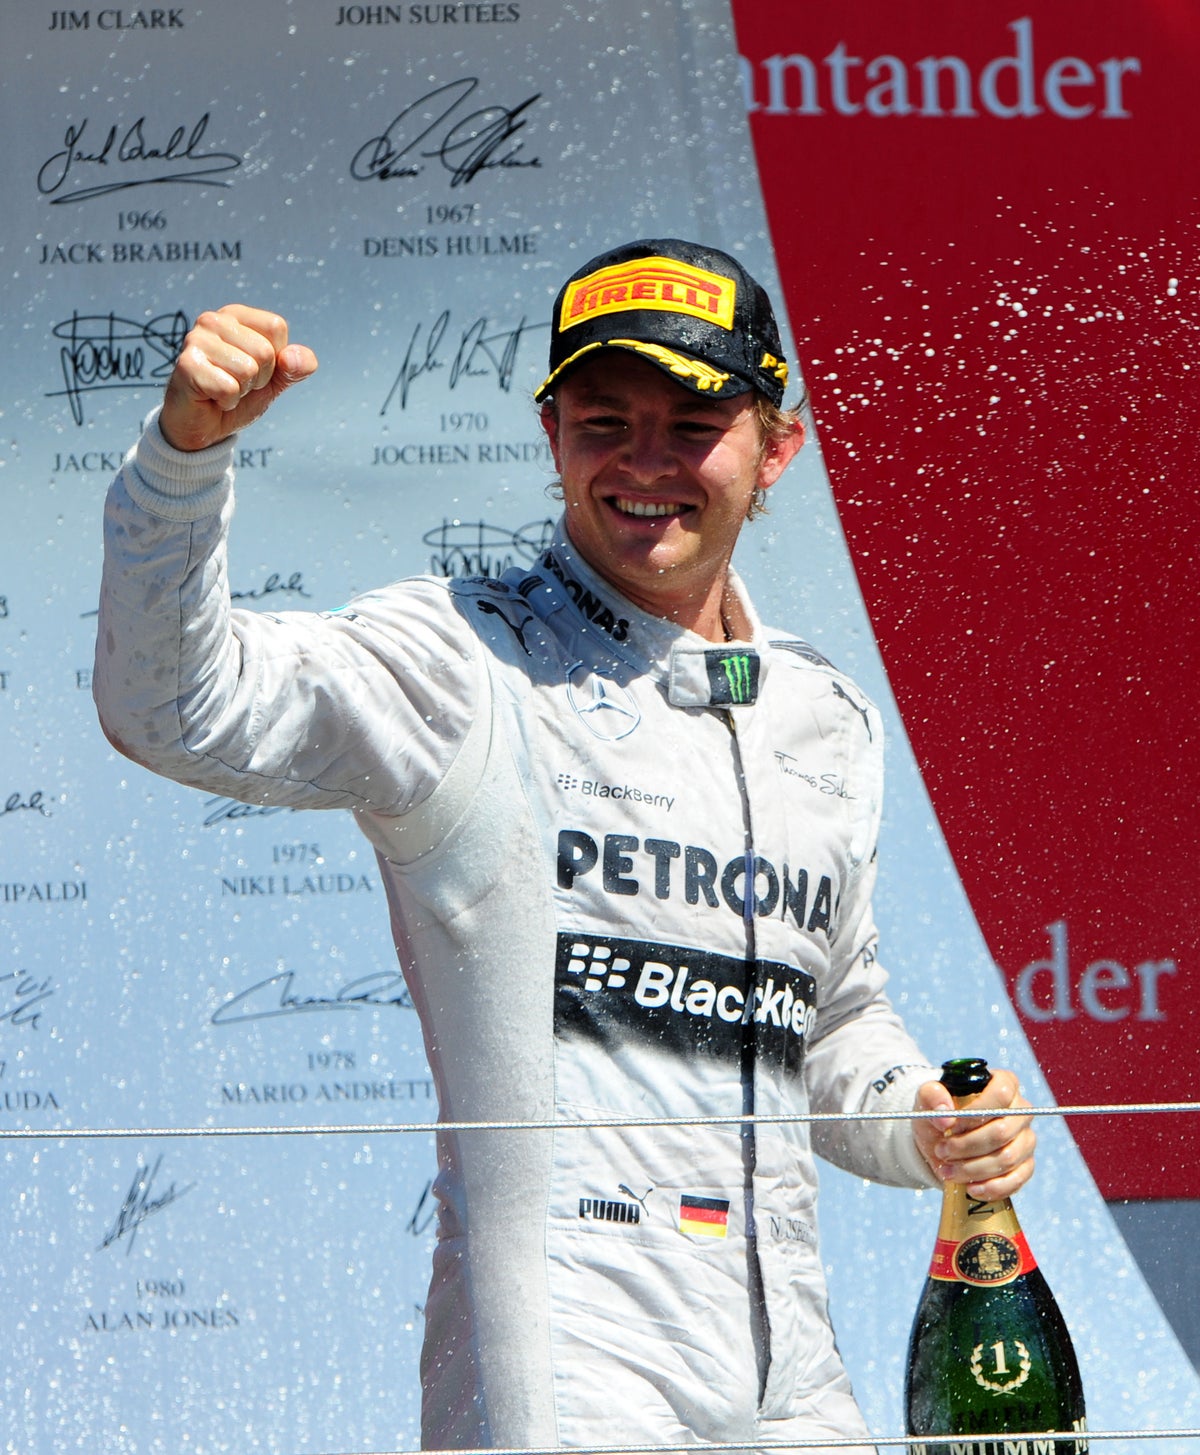 On This Day in 2013 – Nico Rosberg wins British Grand Prix despite reprimand